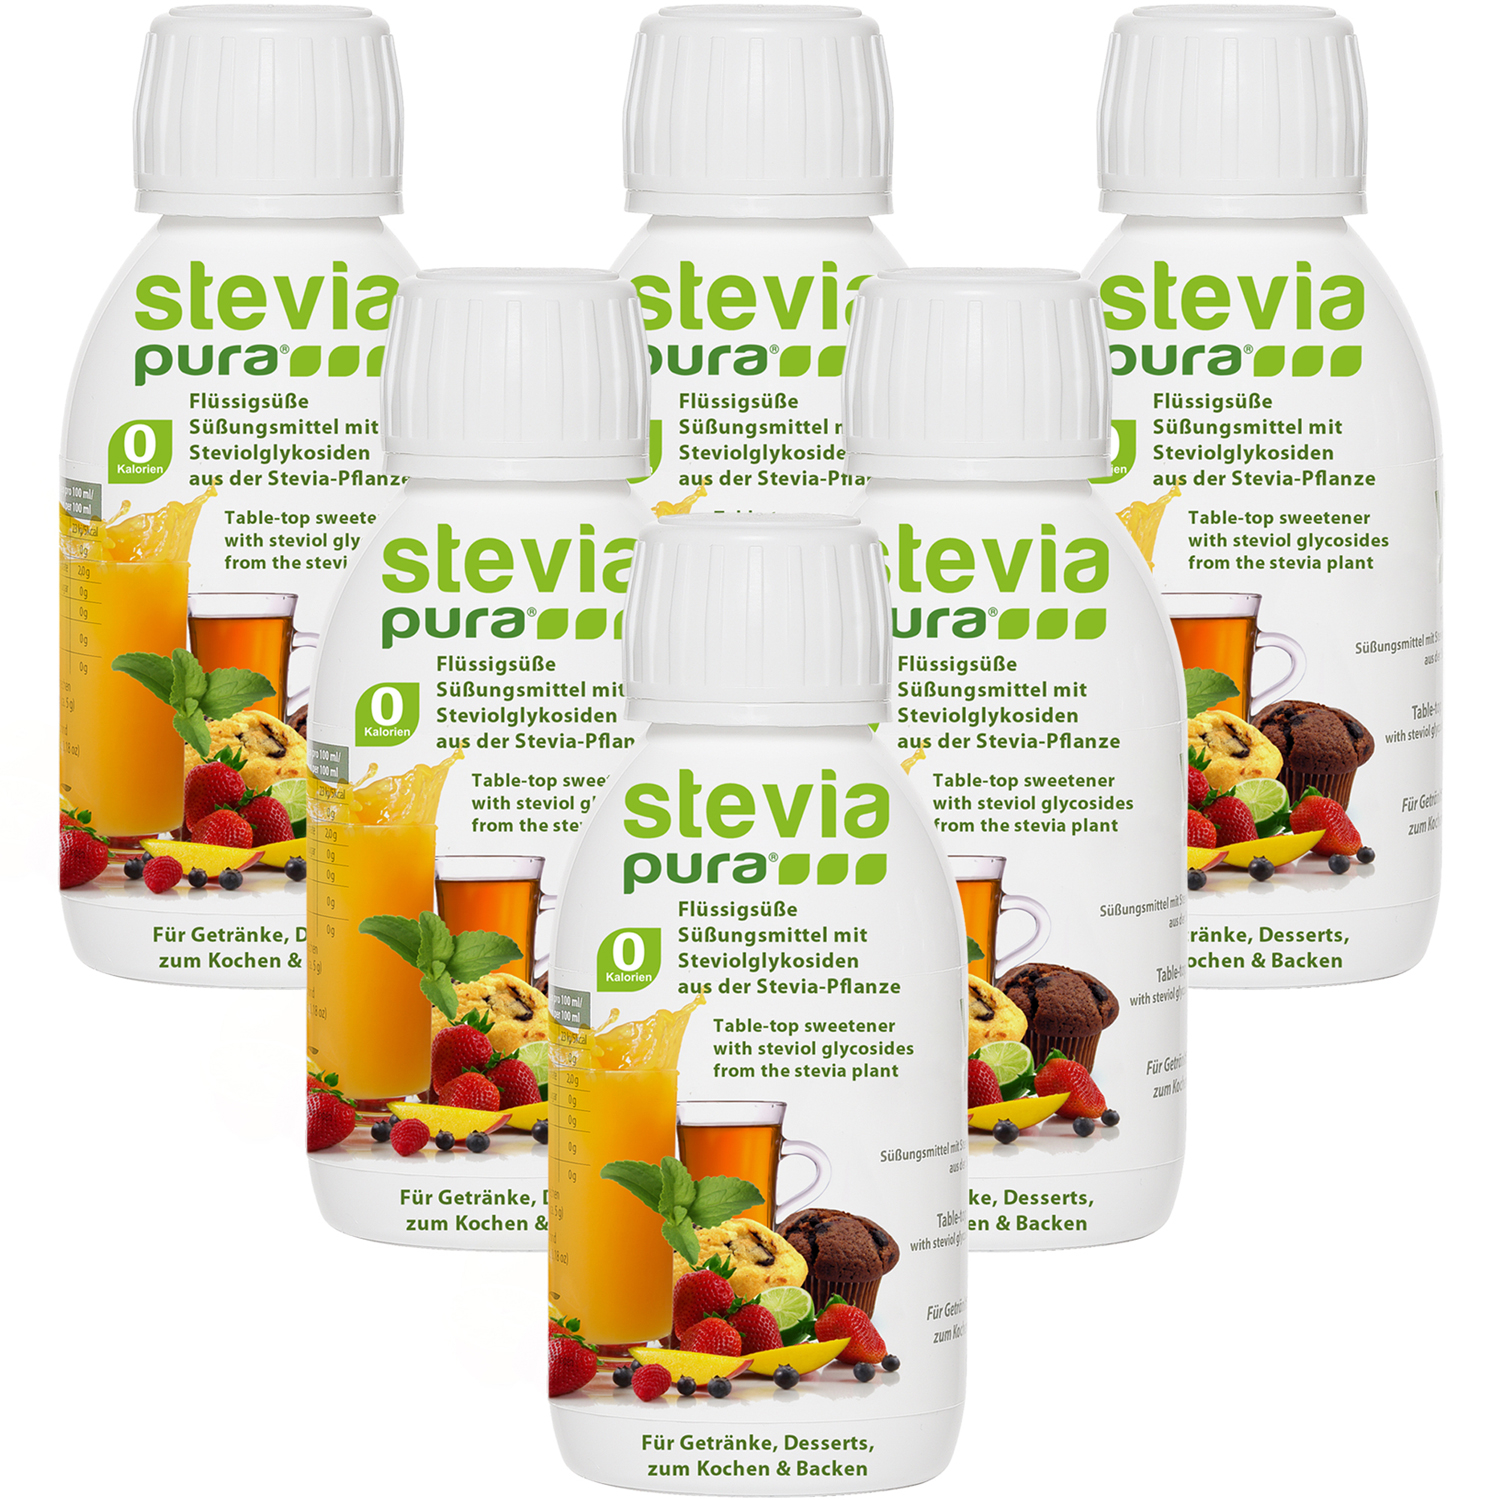 Op zoek naar stevia-pura Vloeibaar Zoetstof van hoogste kwaliteit.